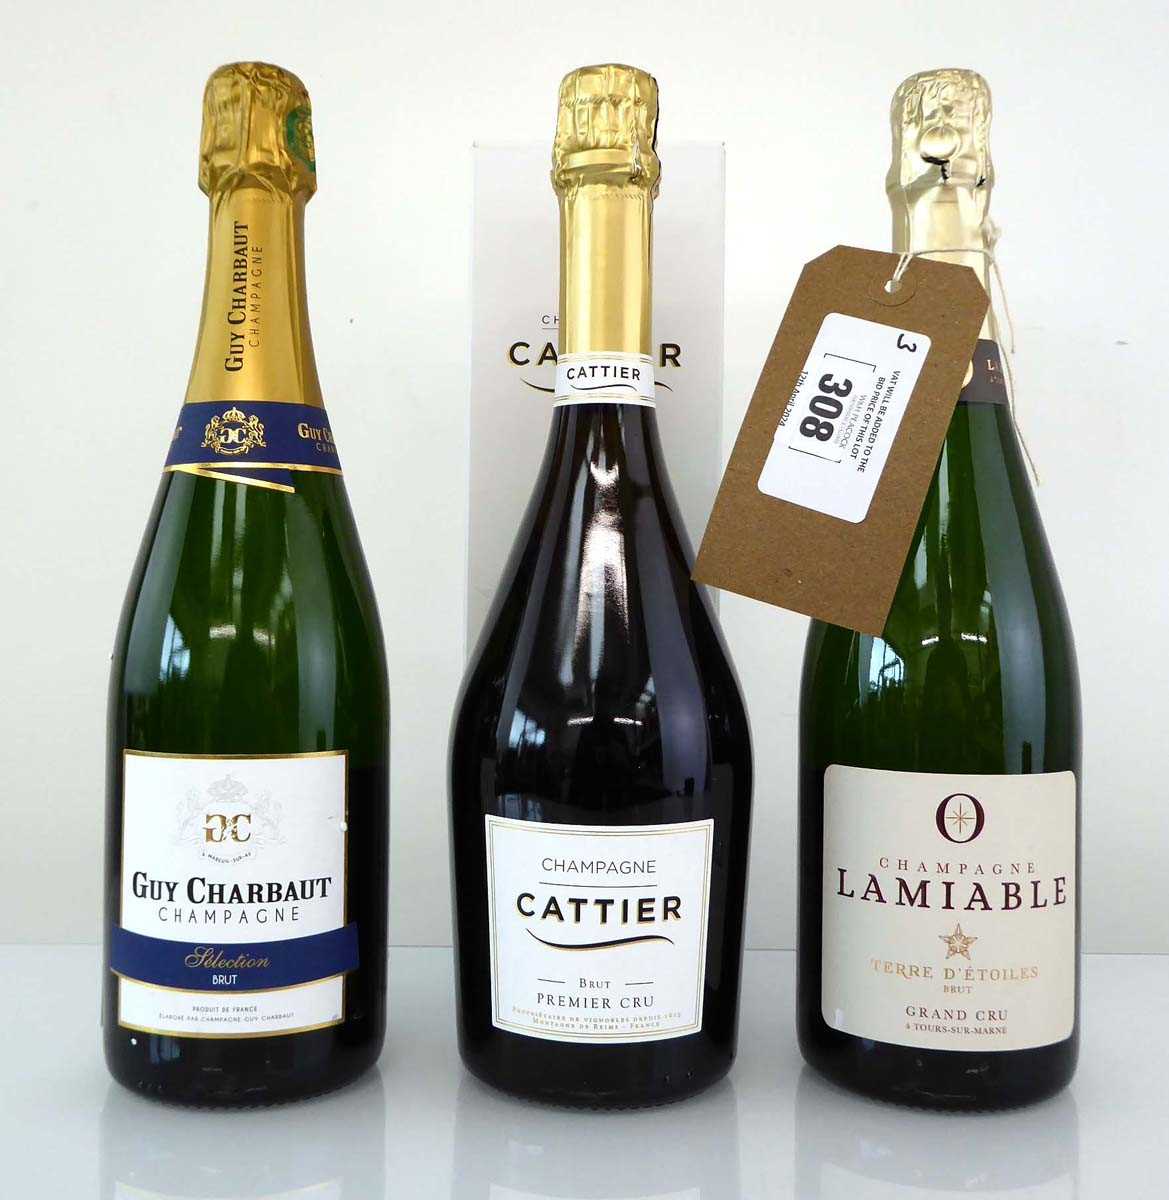 +VAT 3 bottles of Chamagne, 1x Cattier Brut Premier Cru with box, 1x Lamiable Terre D'Etoiles Brut